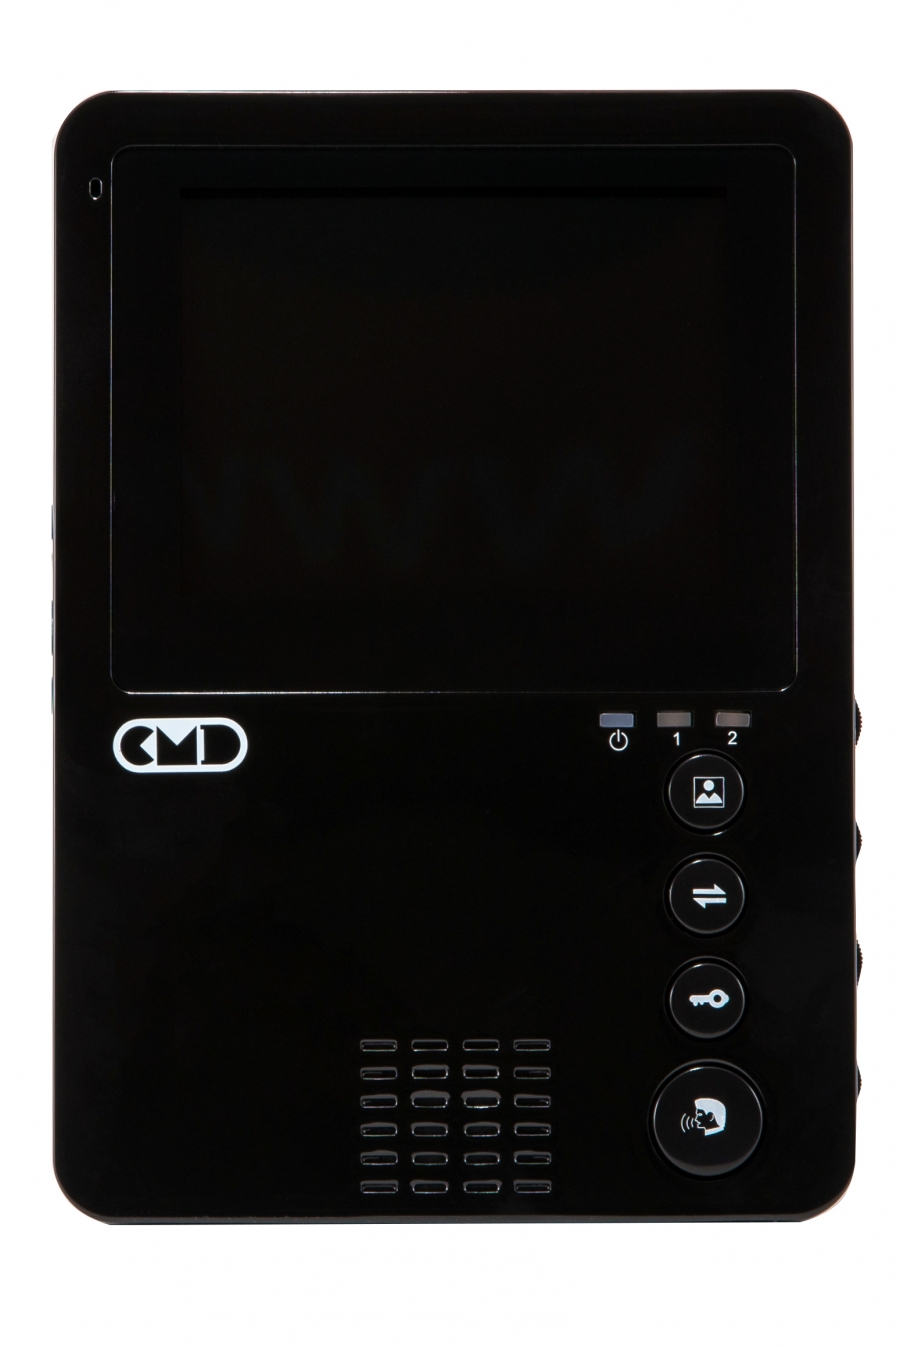  Элеком37. CMD-VD41 BLACK Цветной видеодомофон 4 дюйма, черный. Фото.